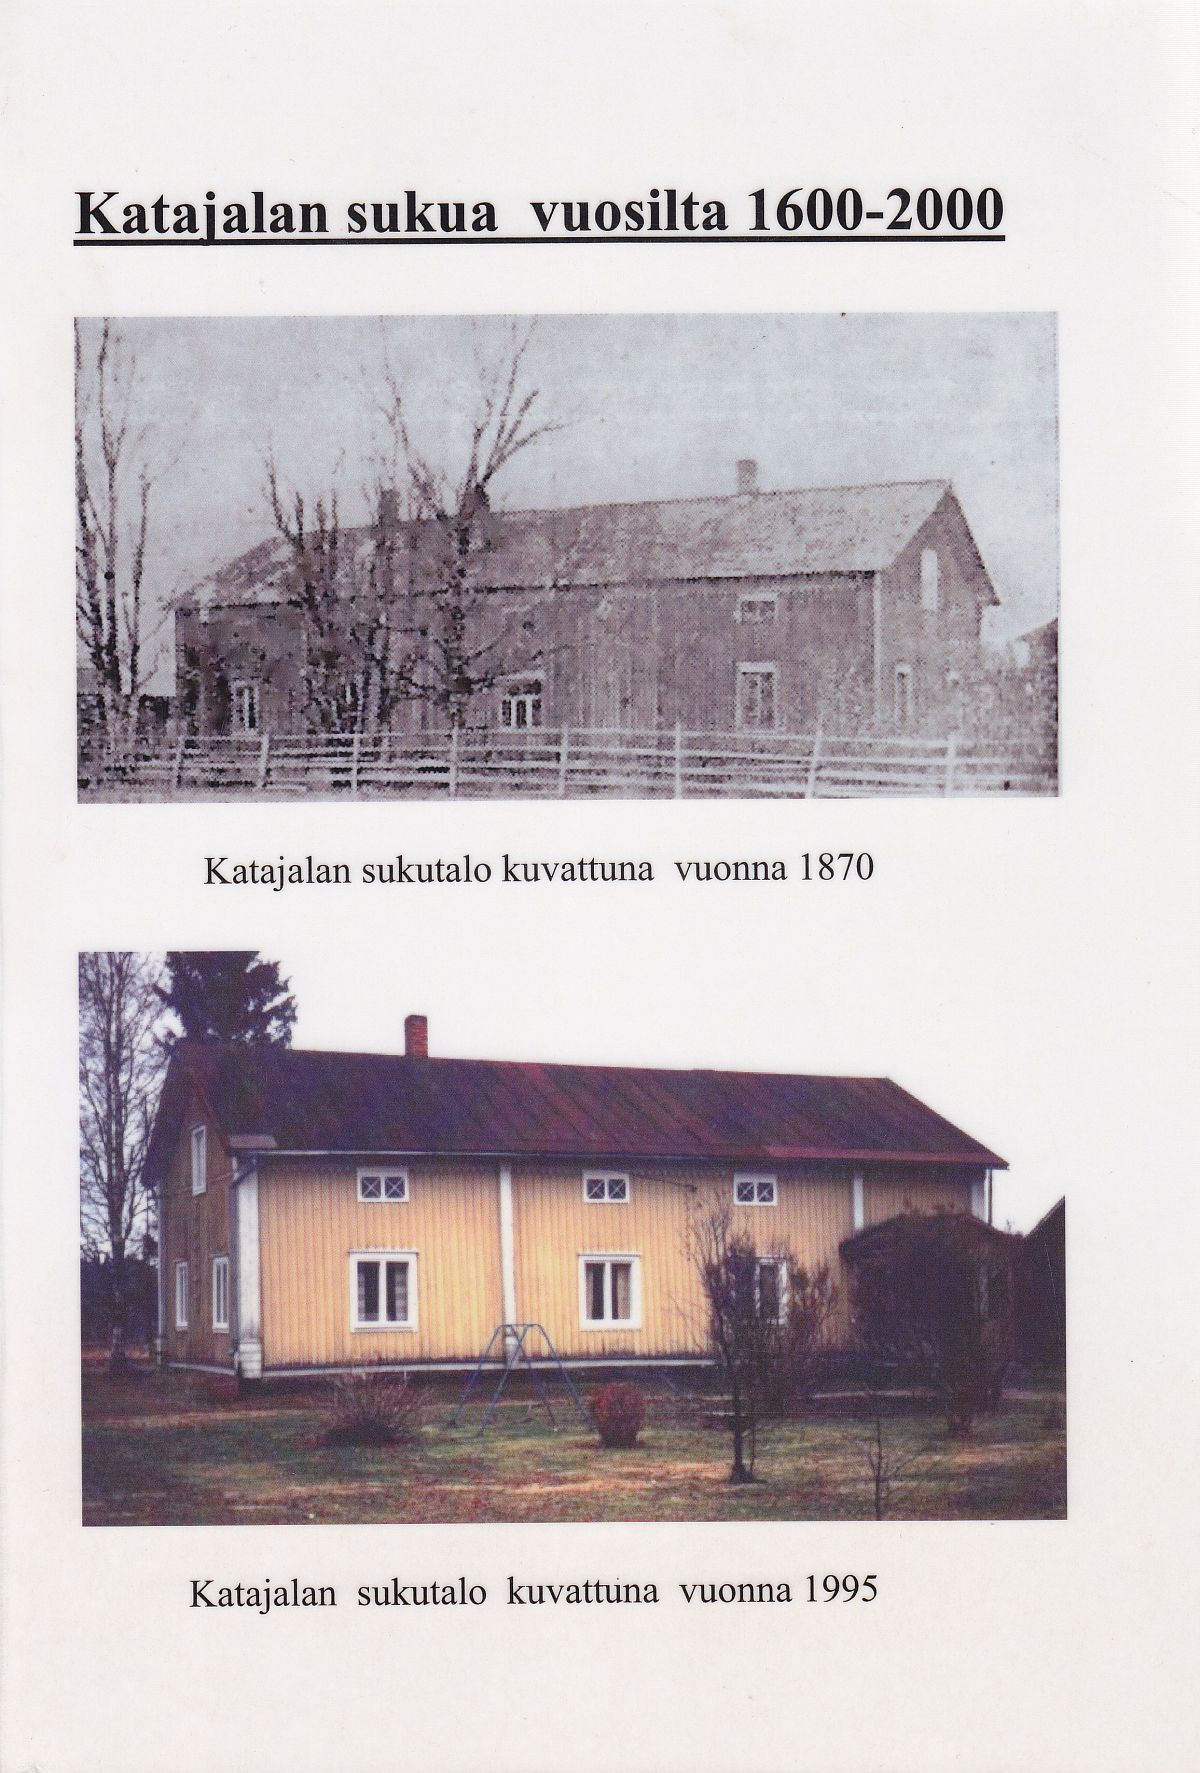 Seppo Kiviojan toeksen Katajalan sukua vuosilta 1600-2000 kannessa suvun kotitalo